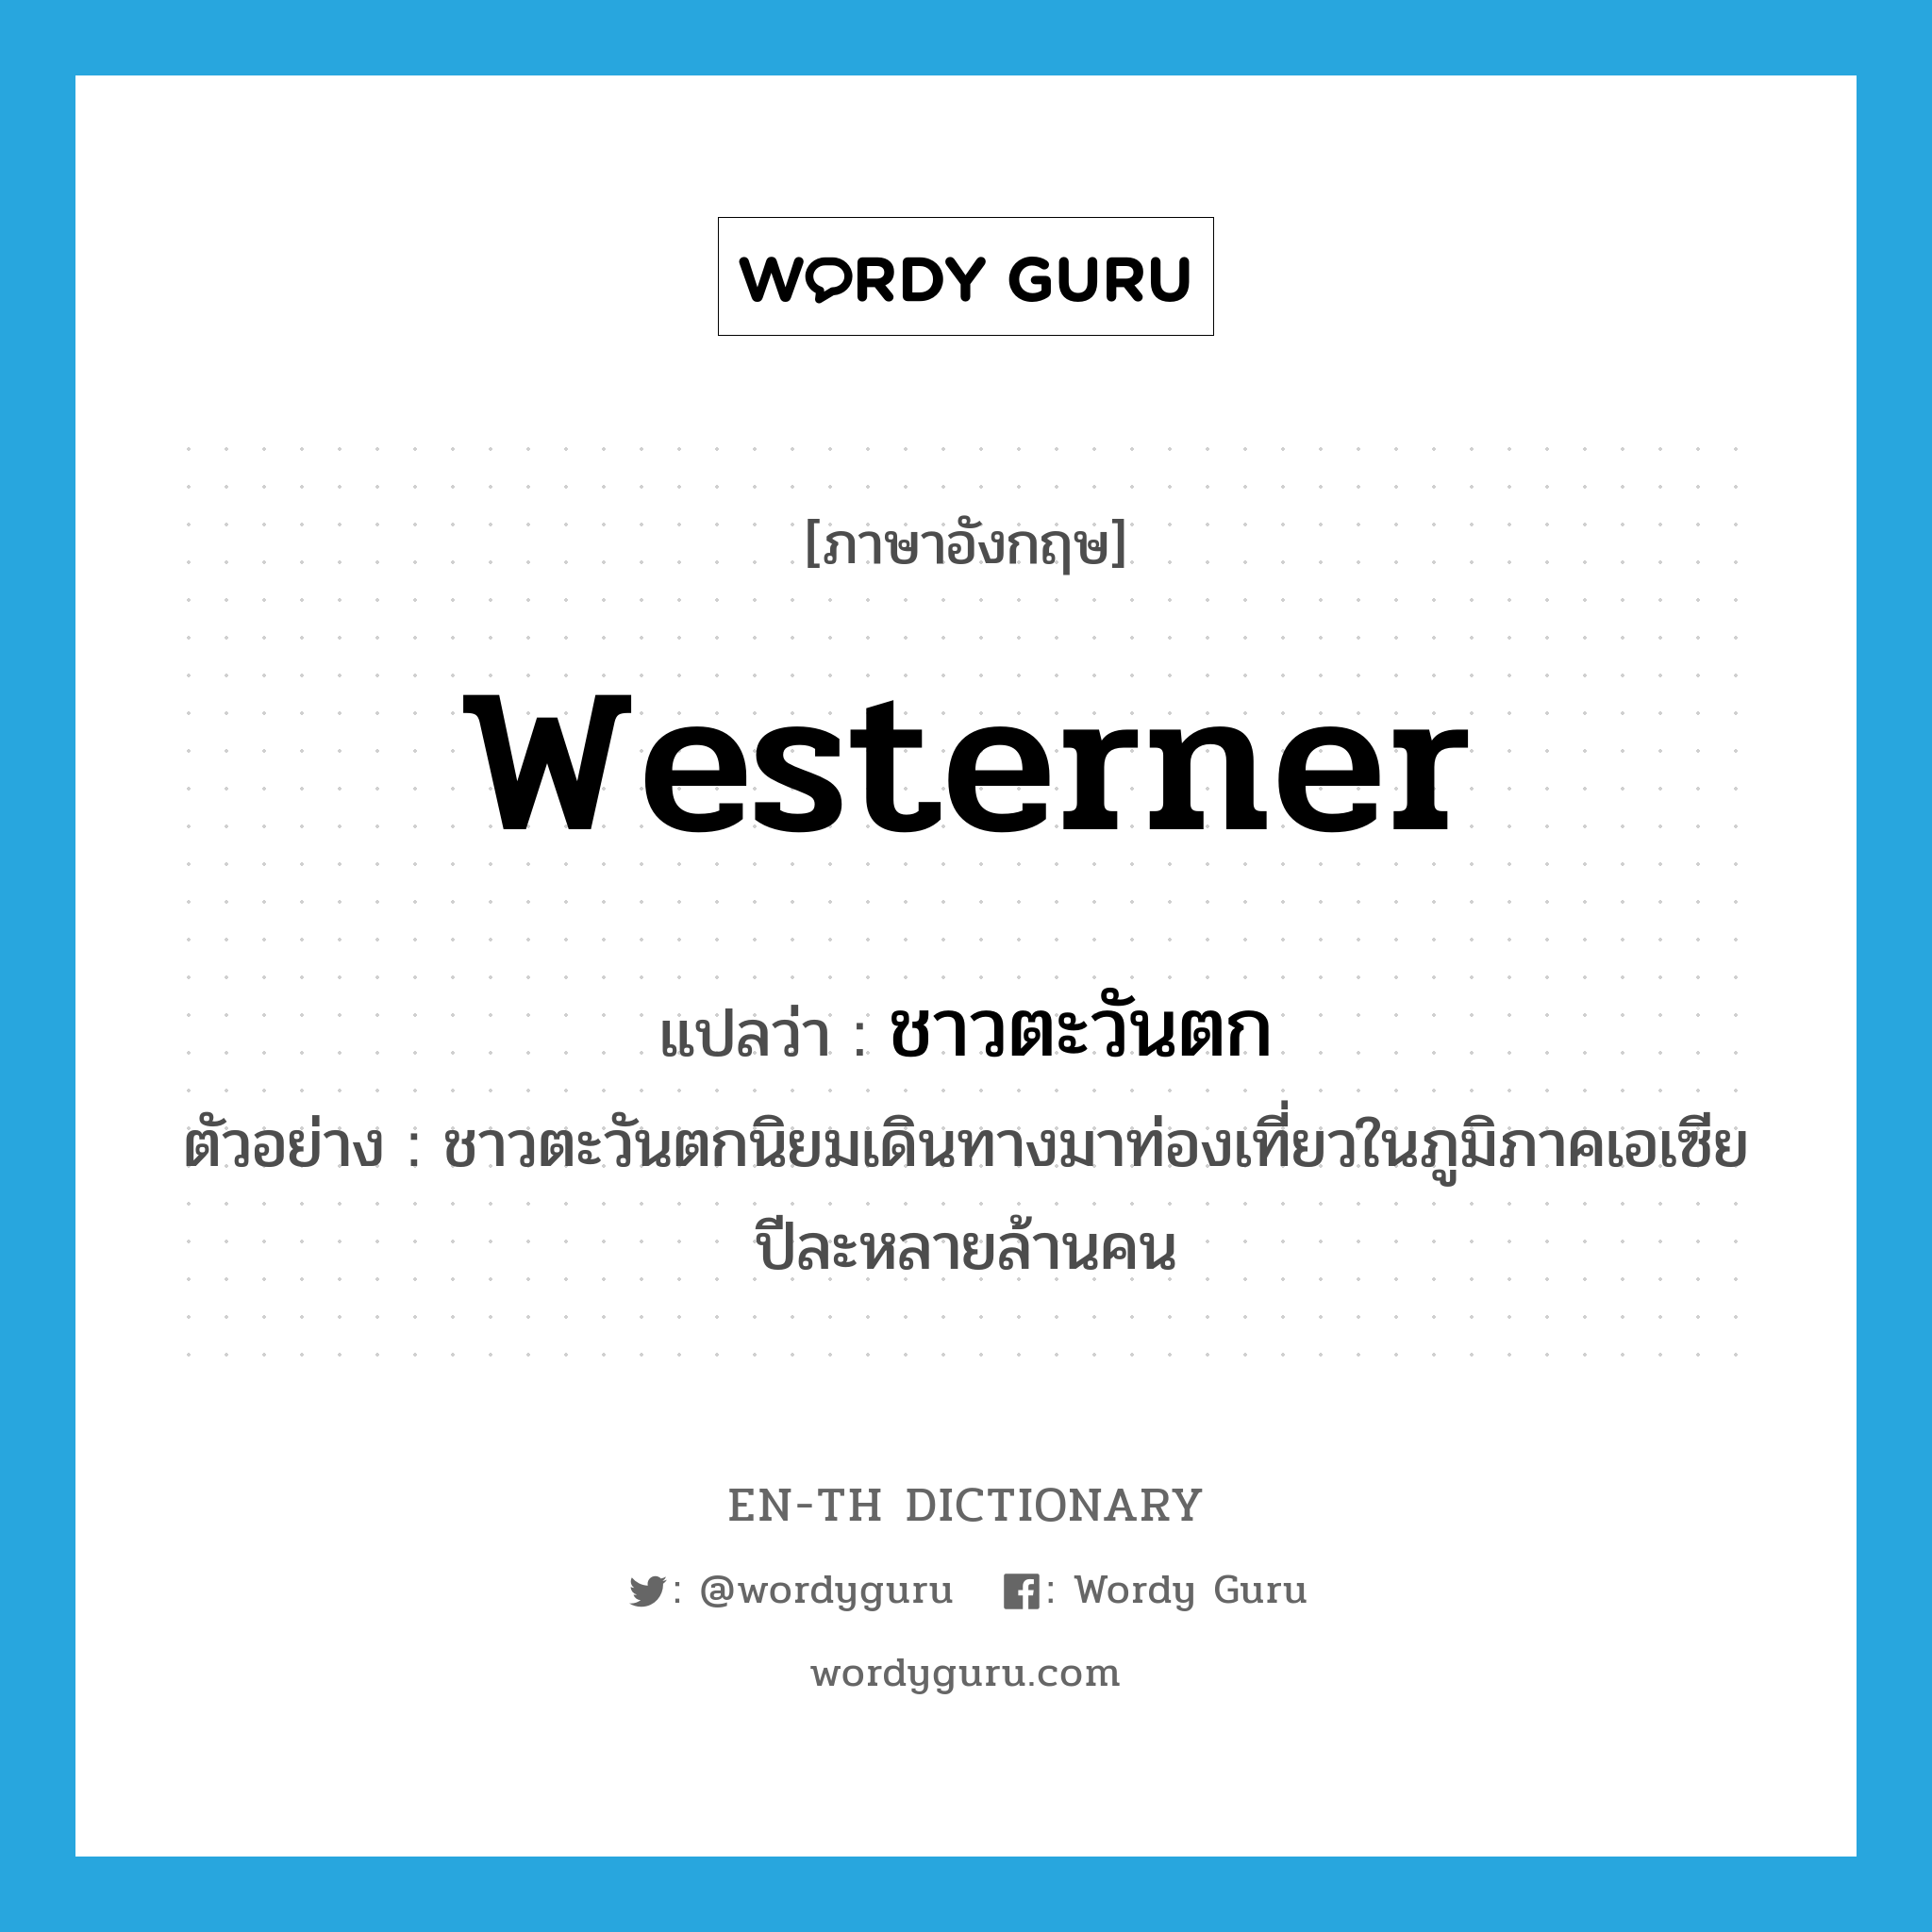 westerner แปลว่า?, คำศัพท์ภาษาอังกฤษ westerner แปลว่า ชาวตะวันตก ประเภท N ตัวอย่าง ชาวตะวันตกนิยมเดินทางมาท่องเที่ยวในภูมิภาคเอเซียปีละหลายล้านคน หมวด N